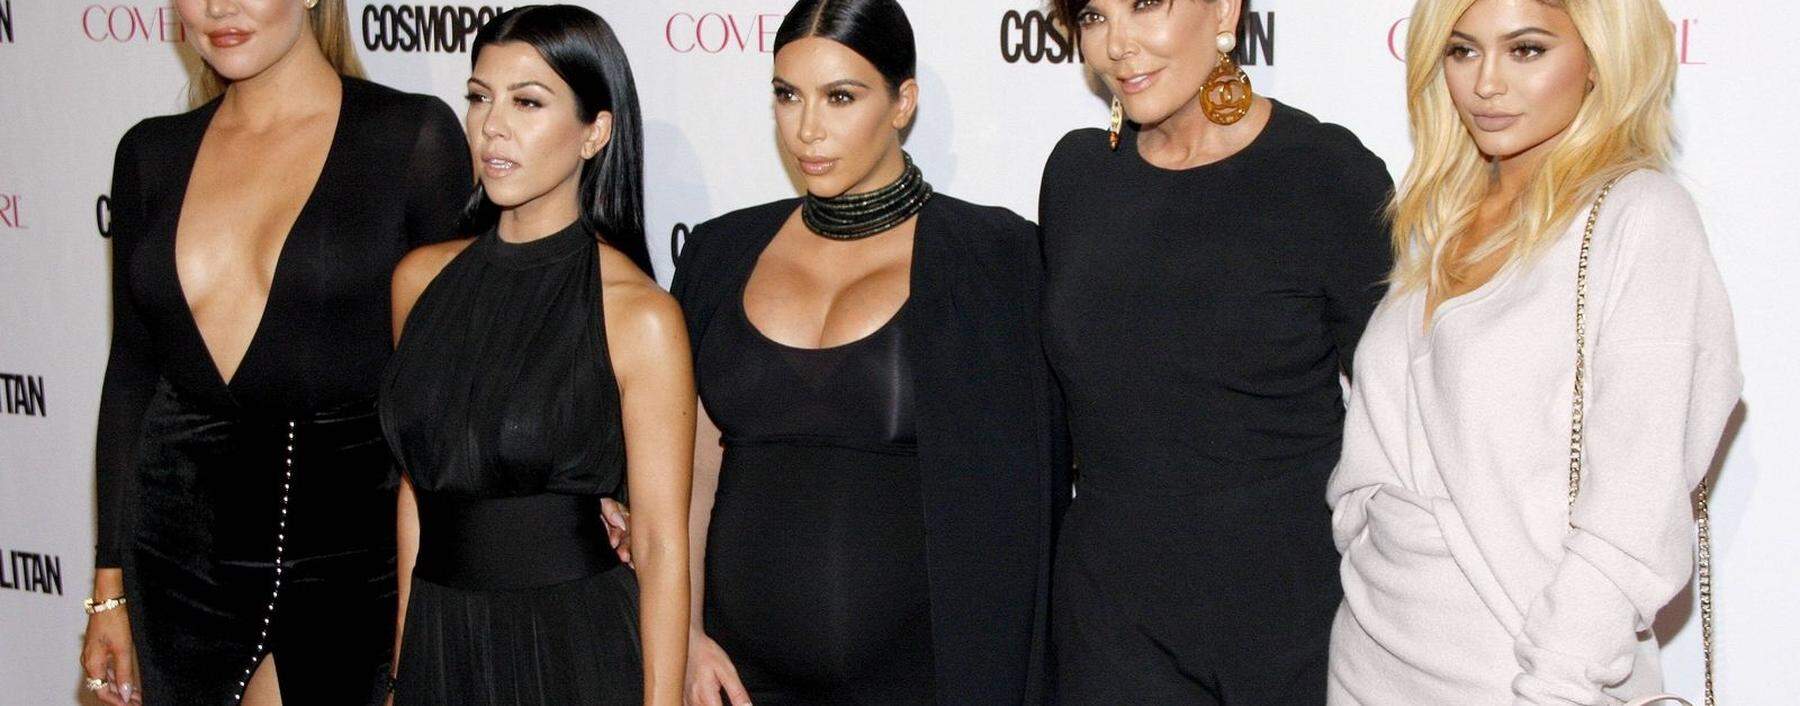 Khloe (v. li.), Kourtney und Kim Kardashian sowie Kris und Kylie Jenner bei einer Veranstaltung der Cosmopolitan 2015 in Los Angeles.